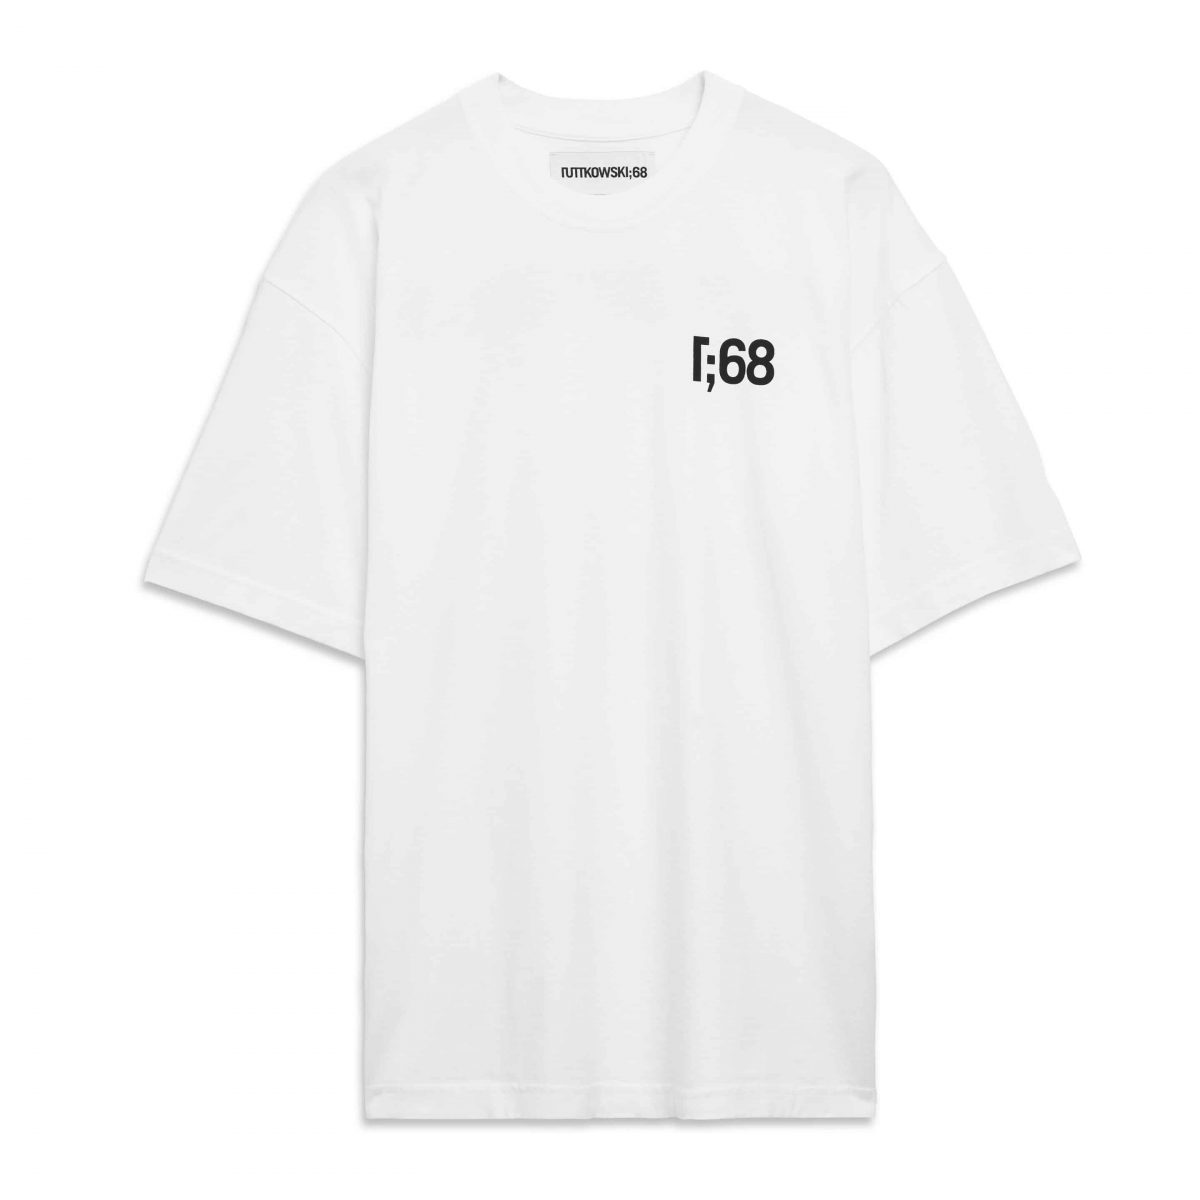 R68 - Tshirt